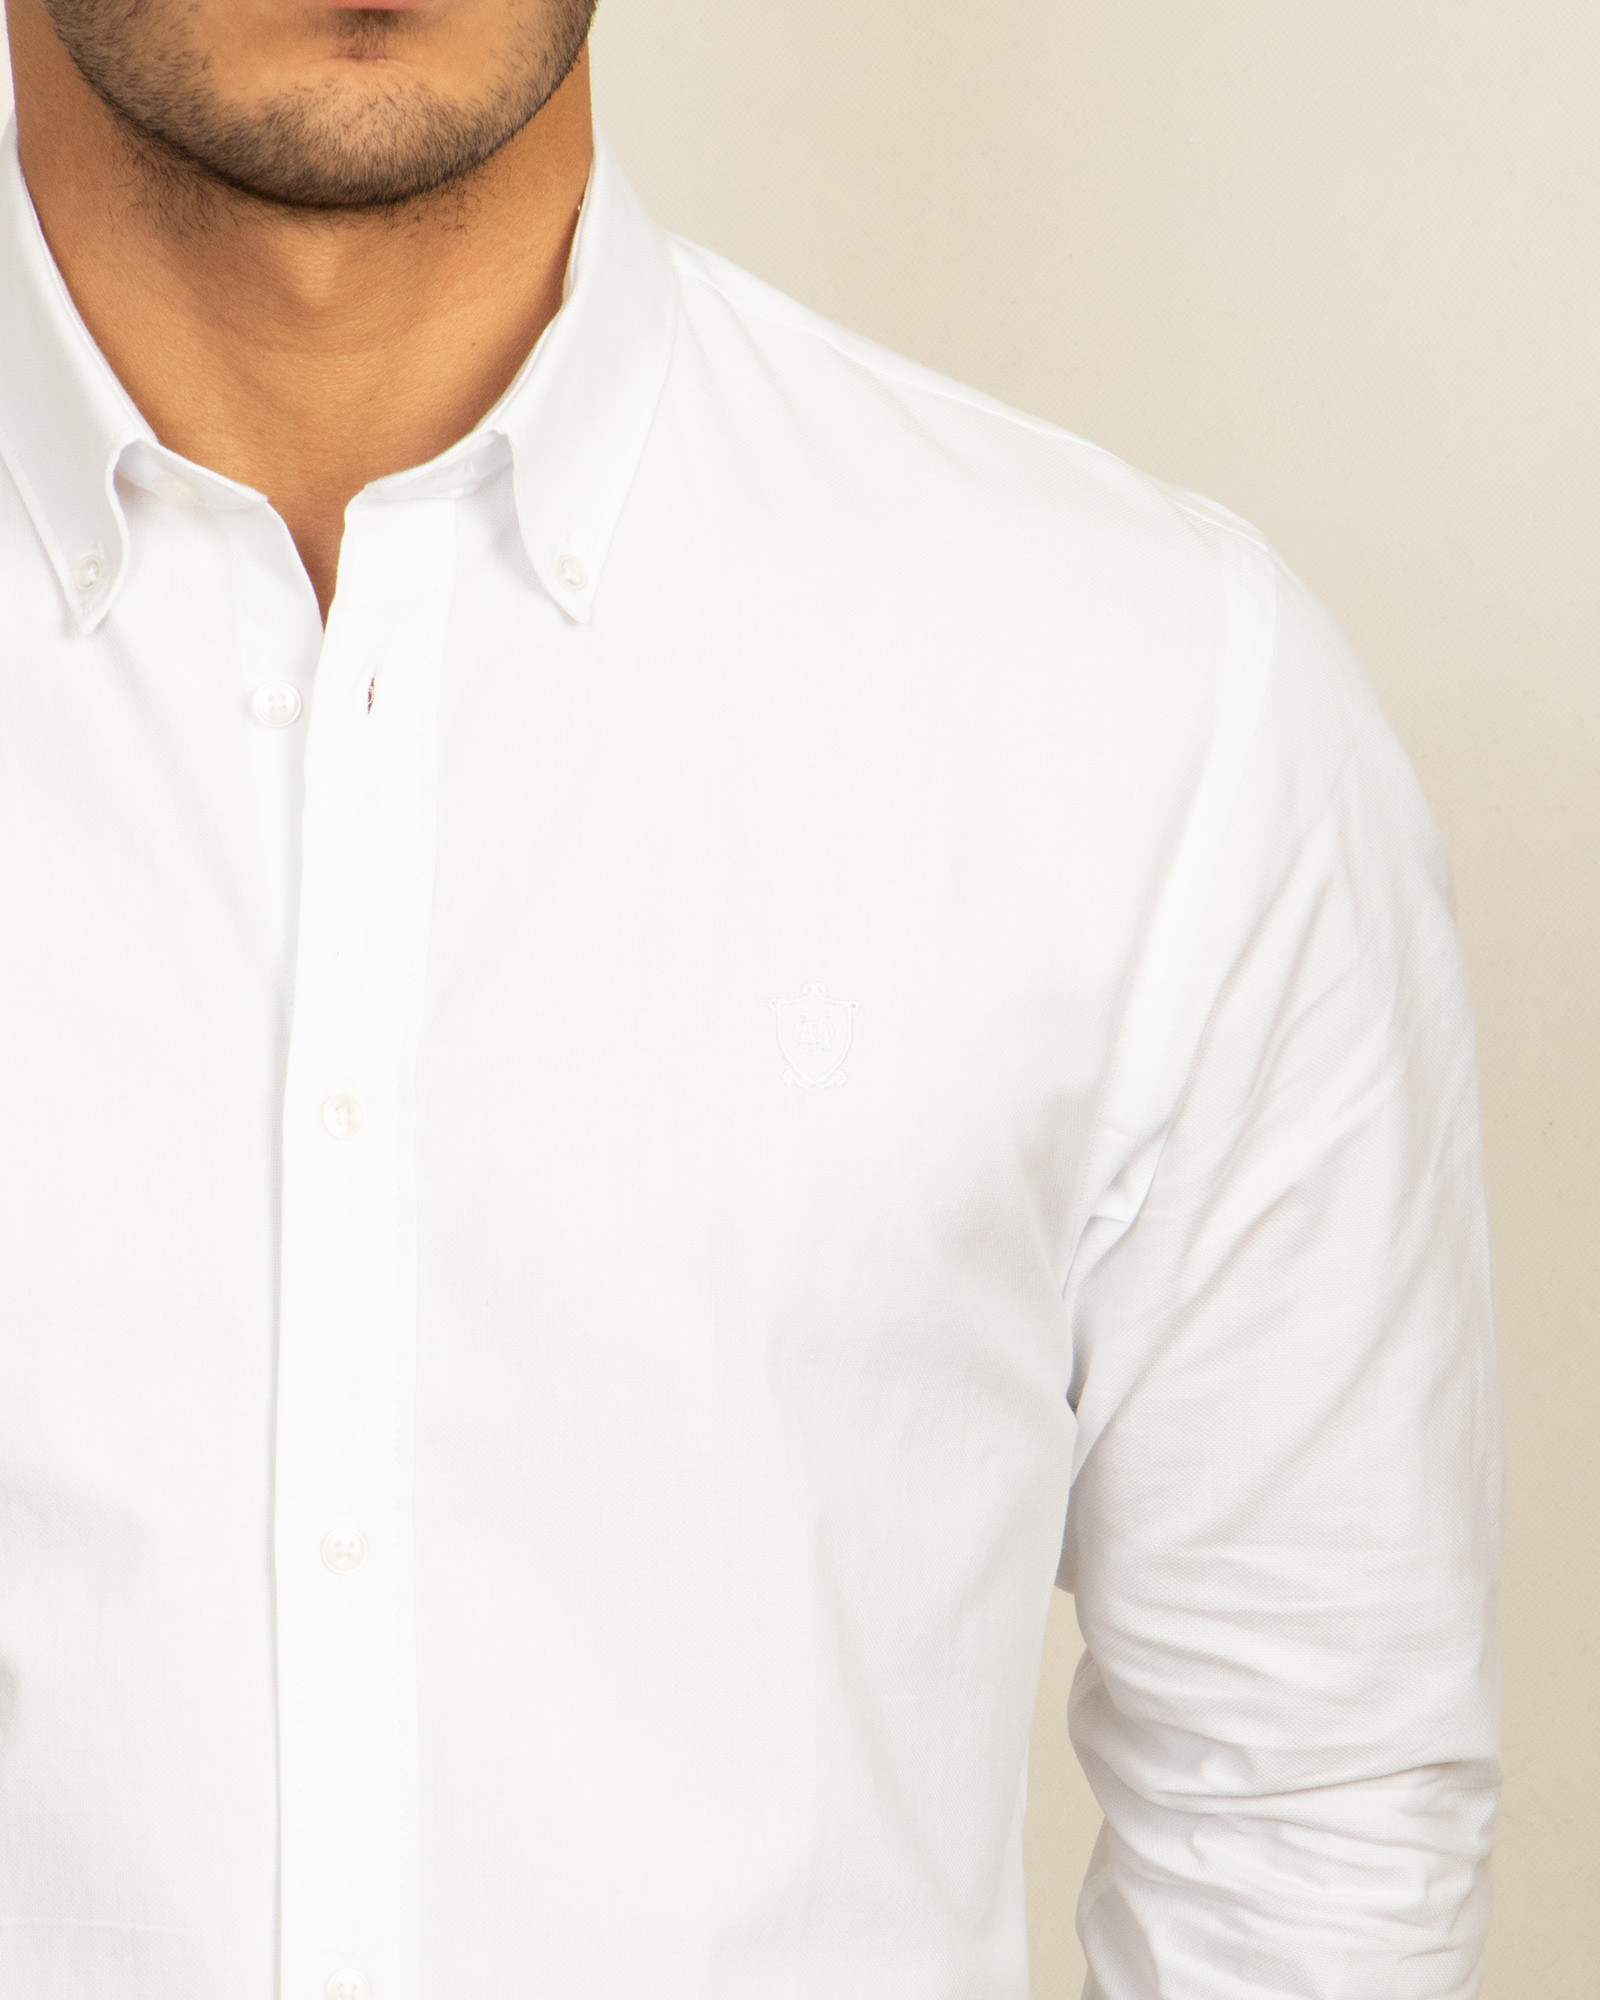 پیراهن شیک مردانه سفید ساده 19421190